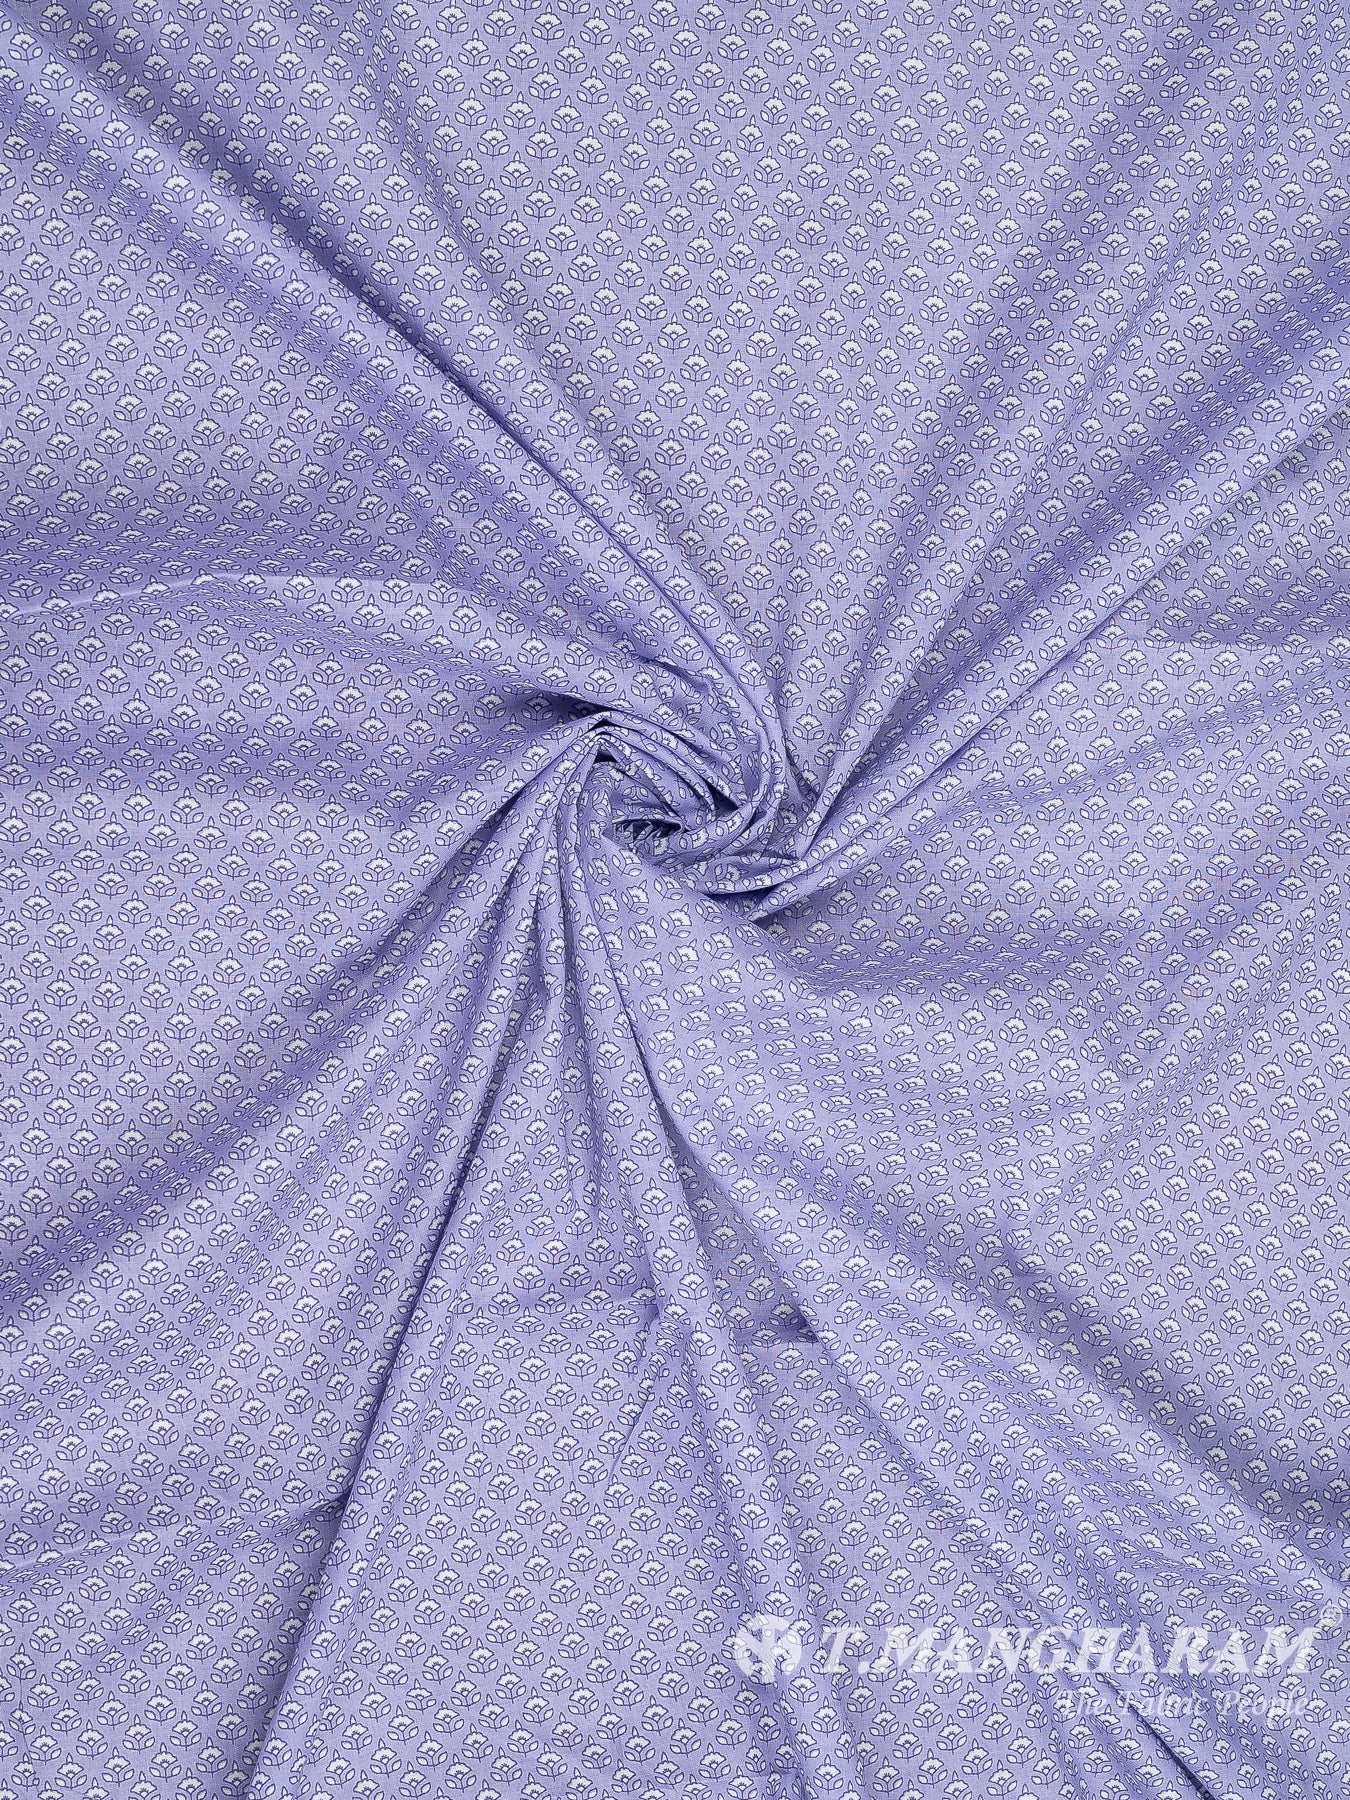 Violet Cotton Fabric - EC8317 view-1